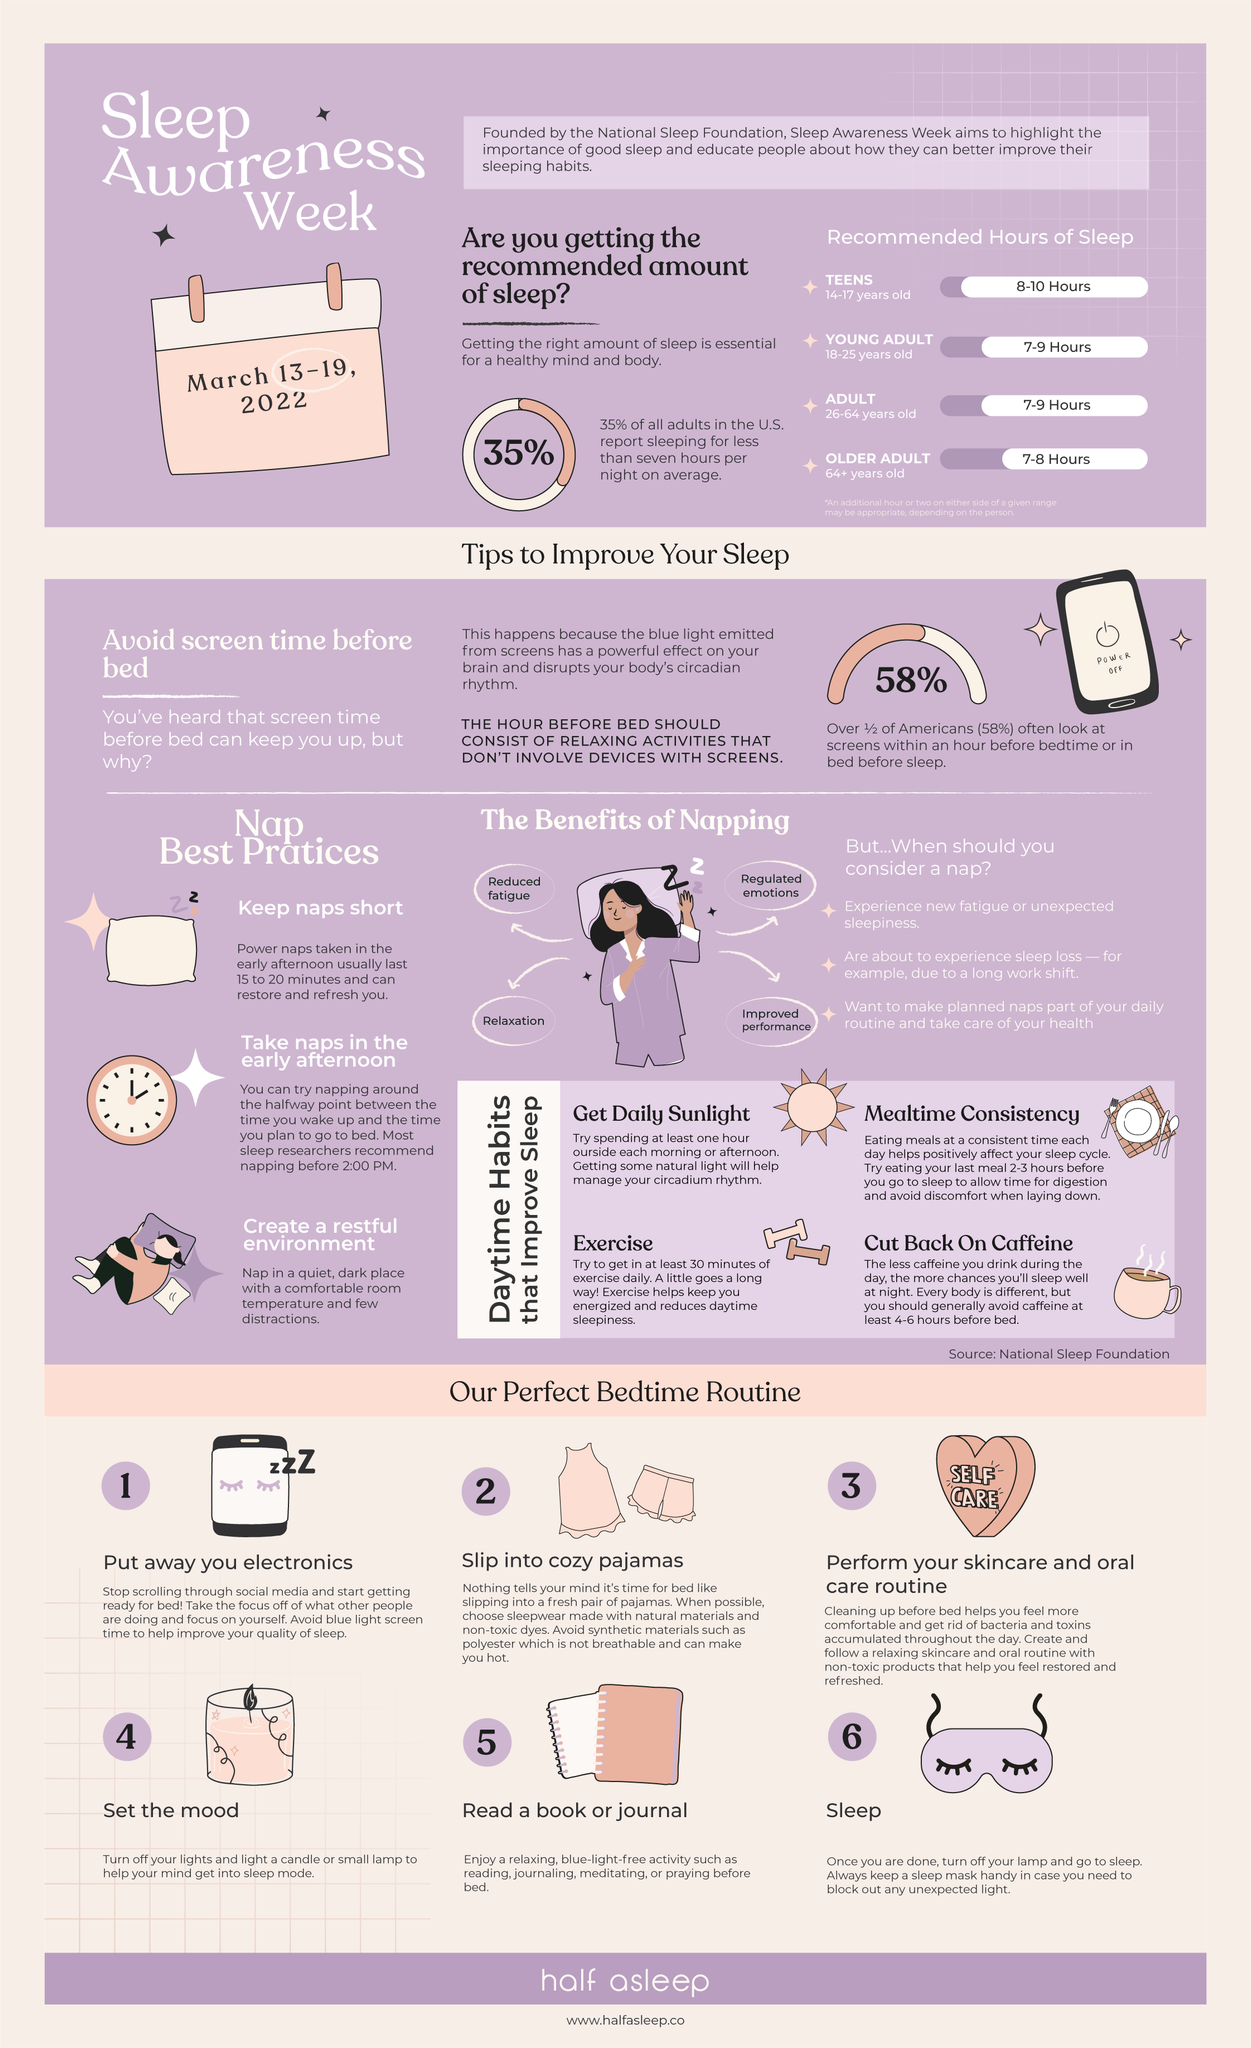 Sleep Awareness Week Recap by Half Asleep Sleepwear - Infographic on Sleep